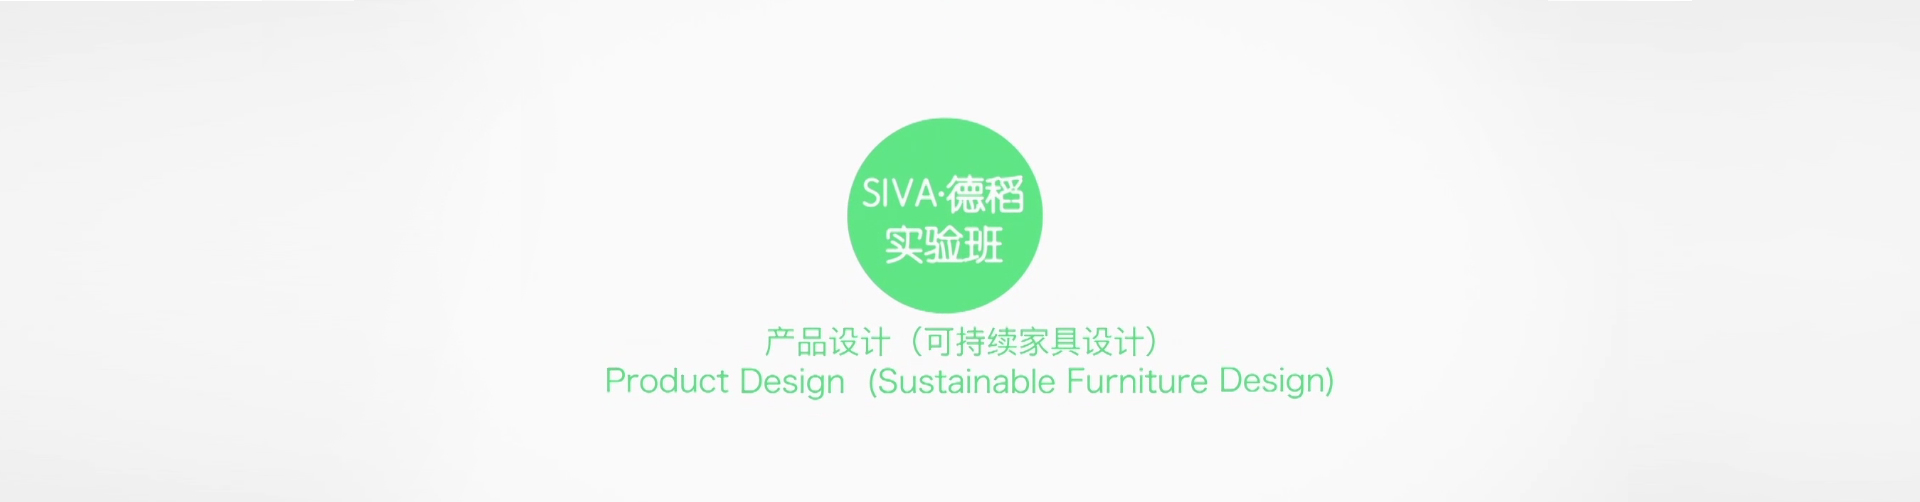 可持续家具设计